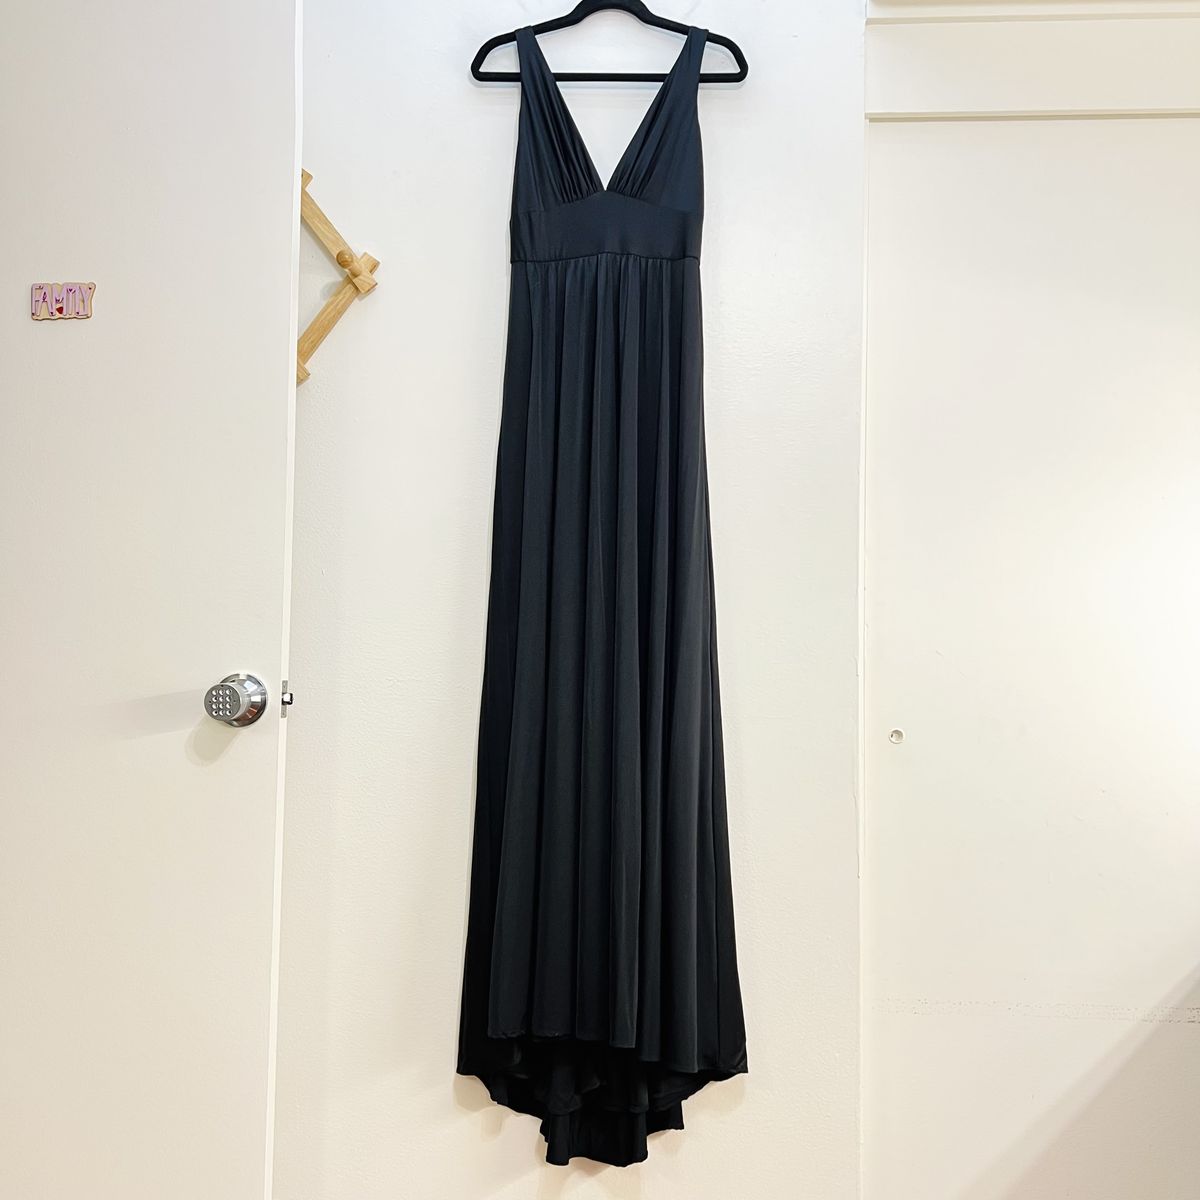 Style 28547 La Femme Size 14 Plunge Black Side Slit Dress on Queenly